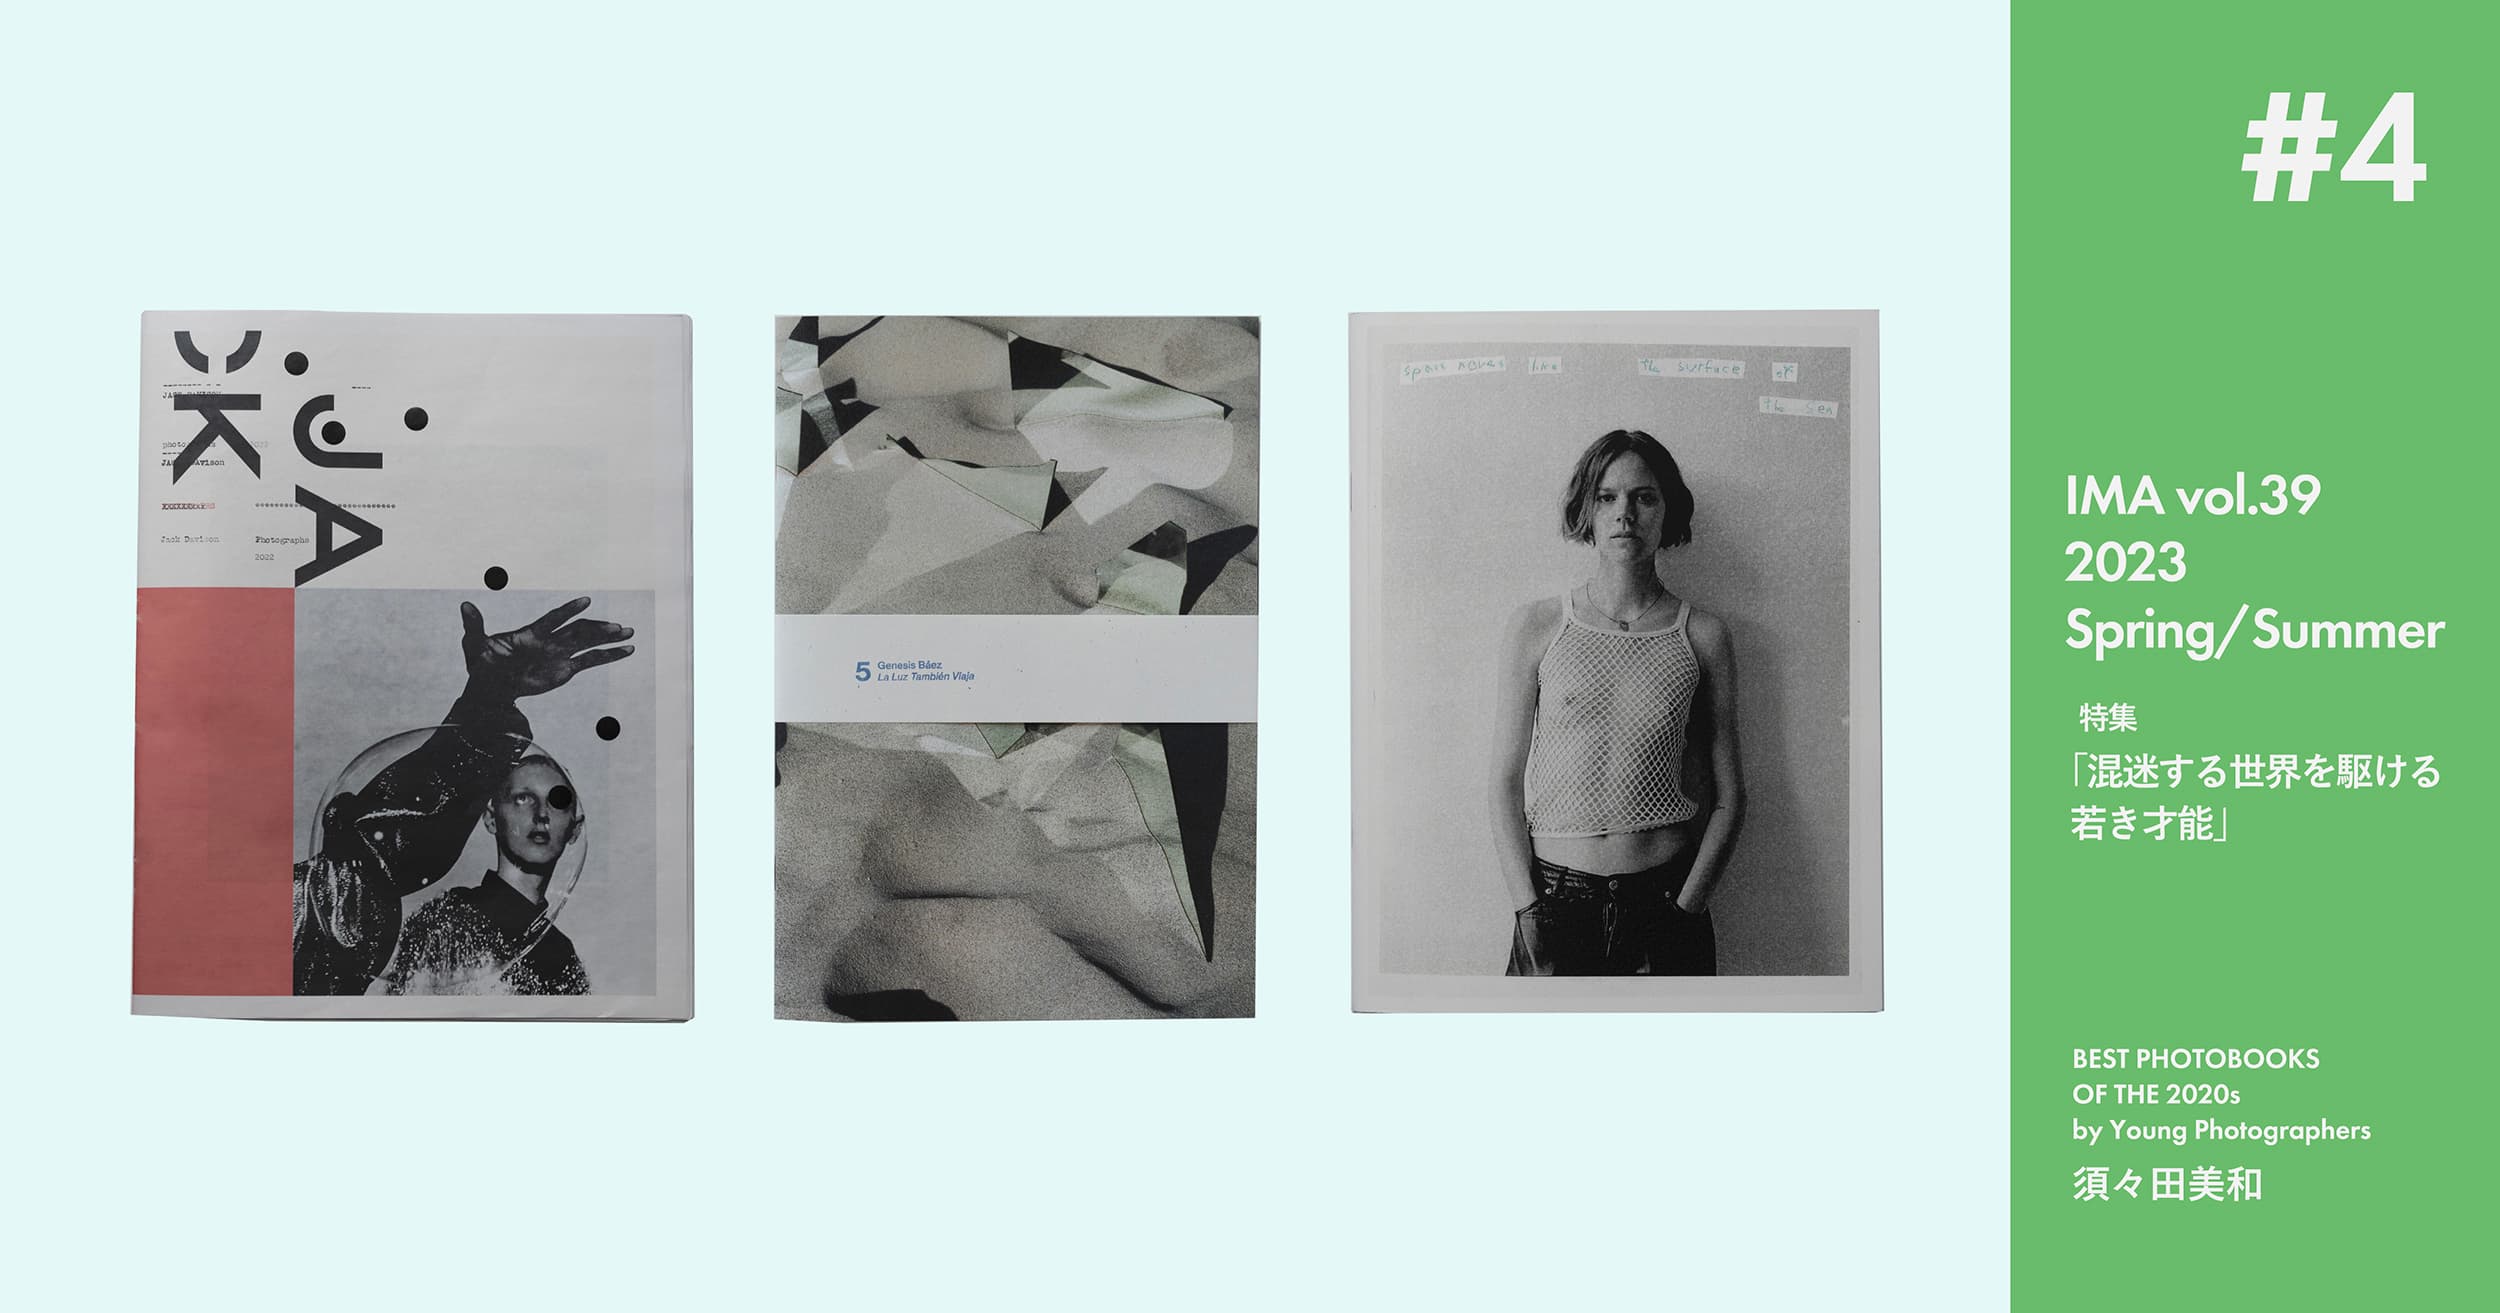 須々田美和が選ぶ若手作家による2020年代のベスト写真集3冊【IMA Vol.39特集】 | 須々田美和が選ぶ、若手作家による2020年代のベスト写真集3冊【IMA Vol.39特集】